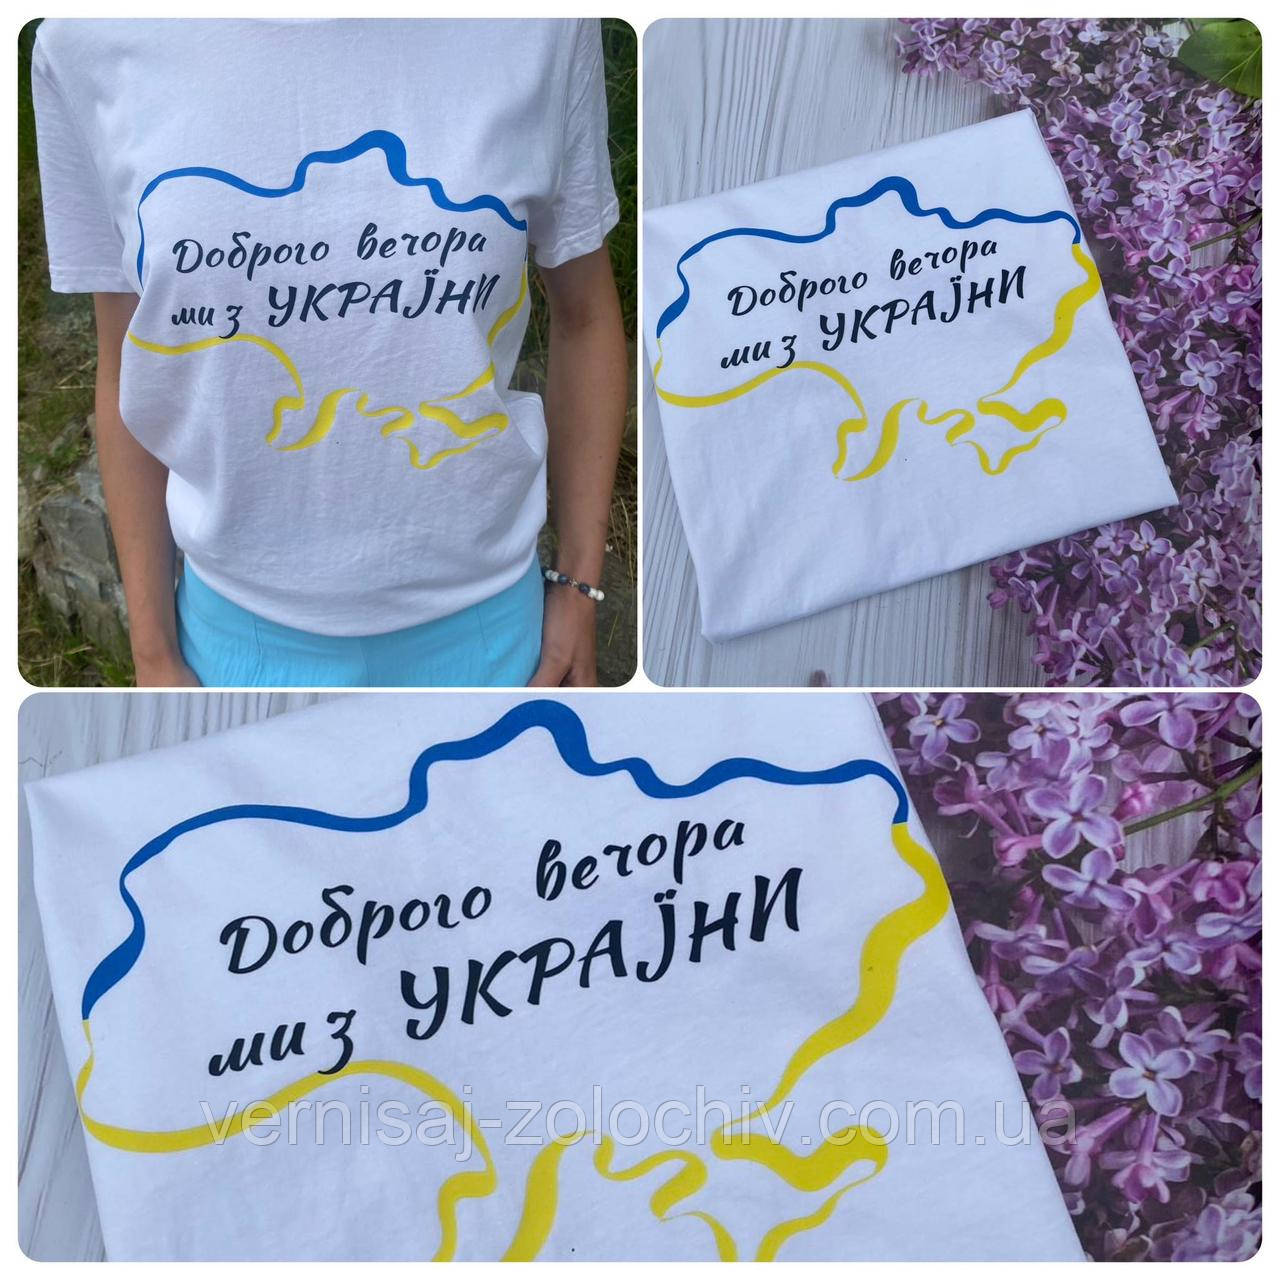 Жіноча патріотична футболка Доброго вечора, ми з України,карта, б. к. р-L